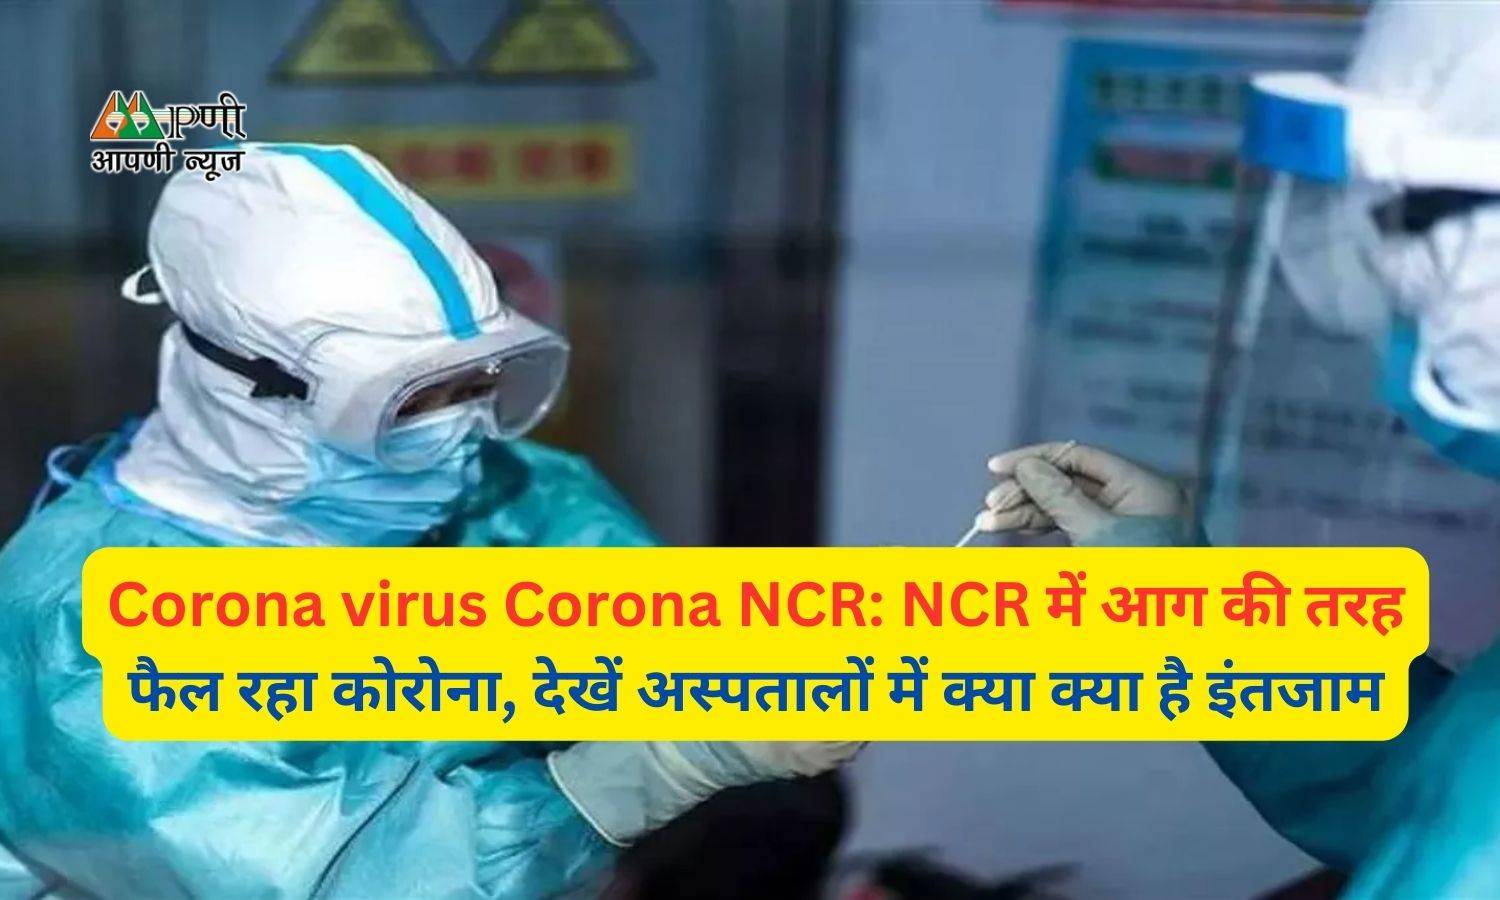 Corona virus Corona NCR: NCR में आग की तरह फैल रहा कोरोना, देखें अस्पतालों में क्या क्या है इंतजाम